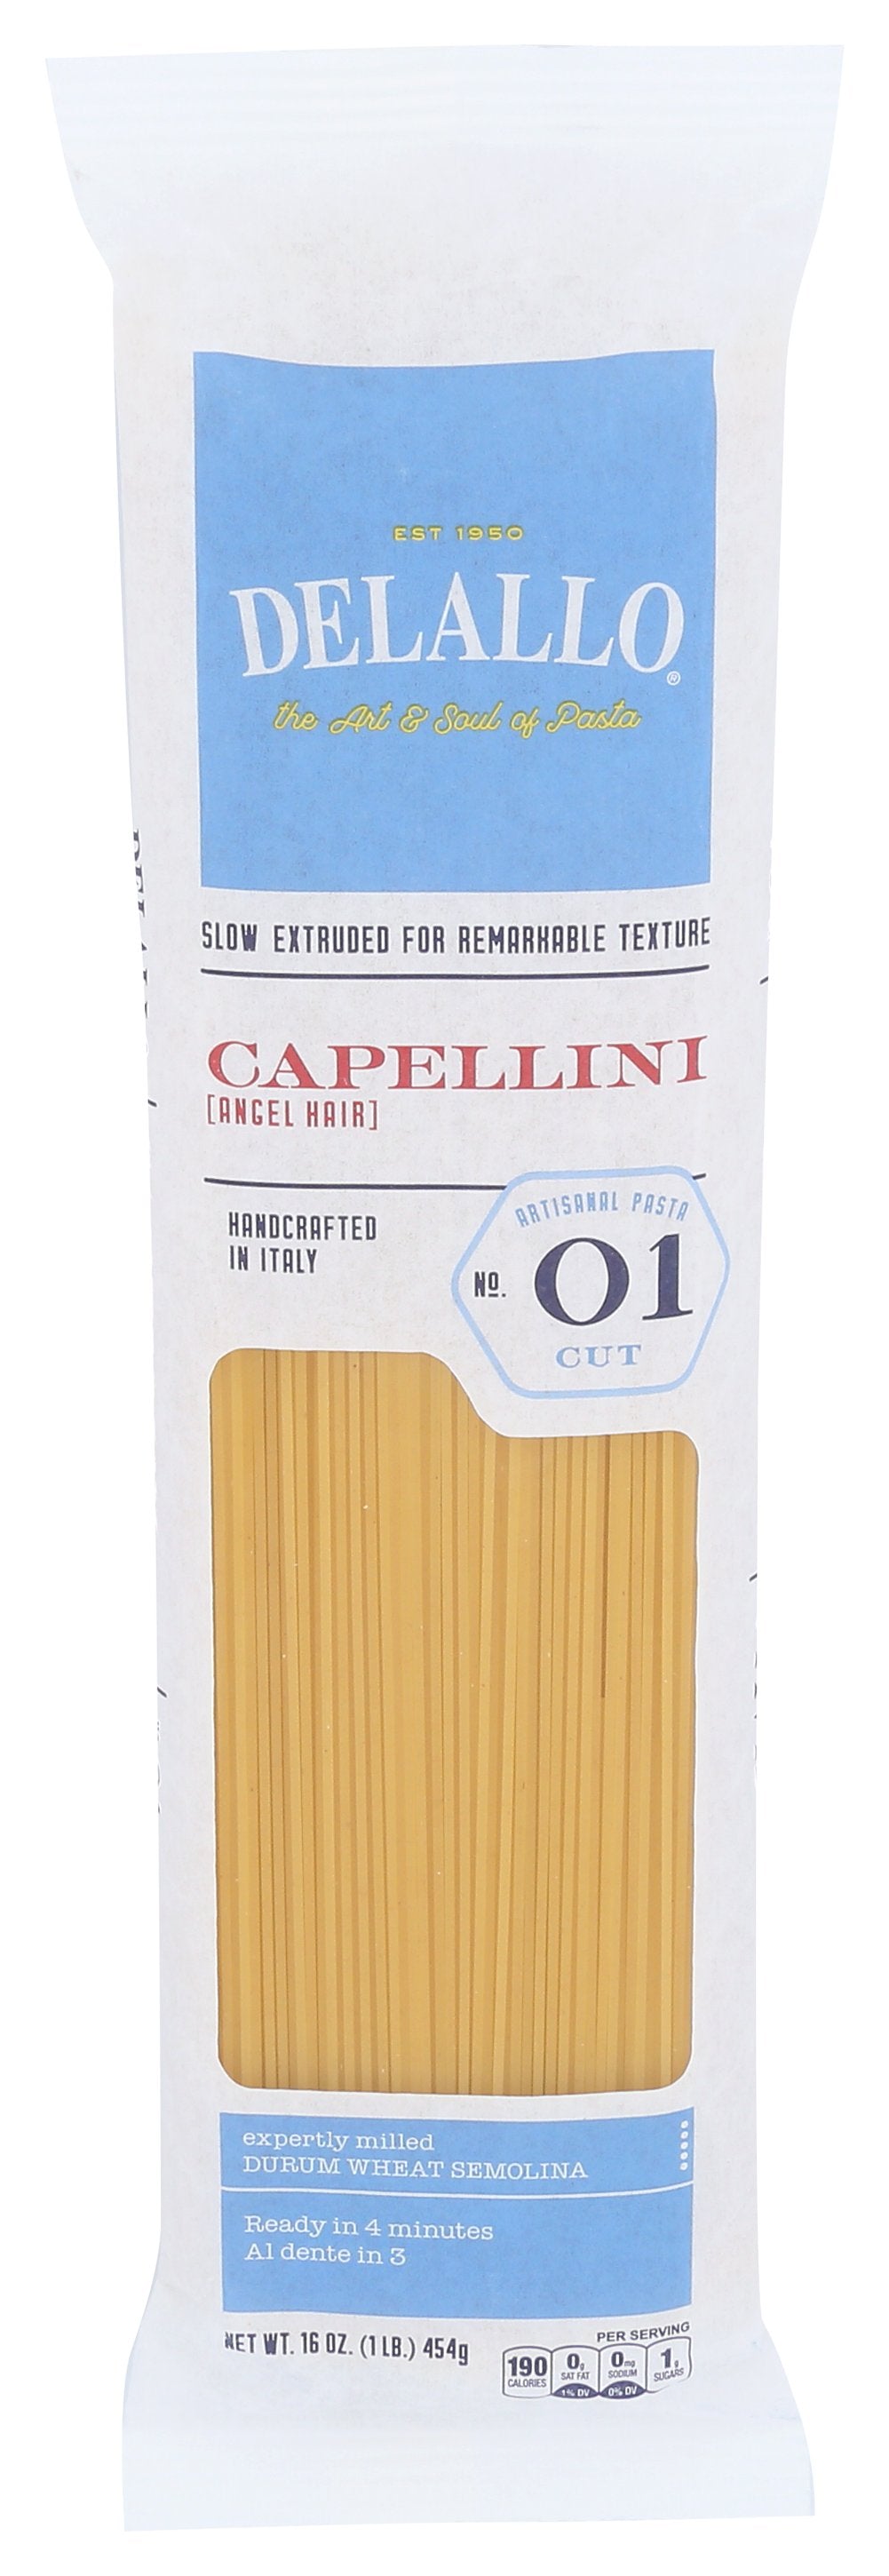 DELALLO CAPELLINI #01 - Case of 16